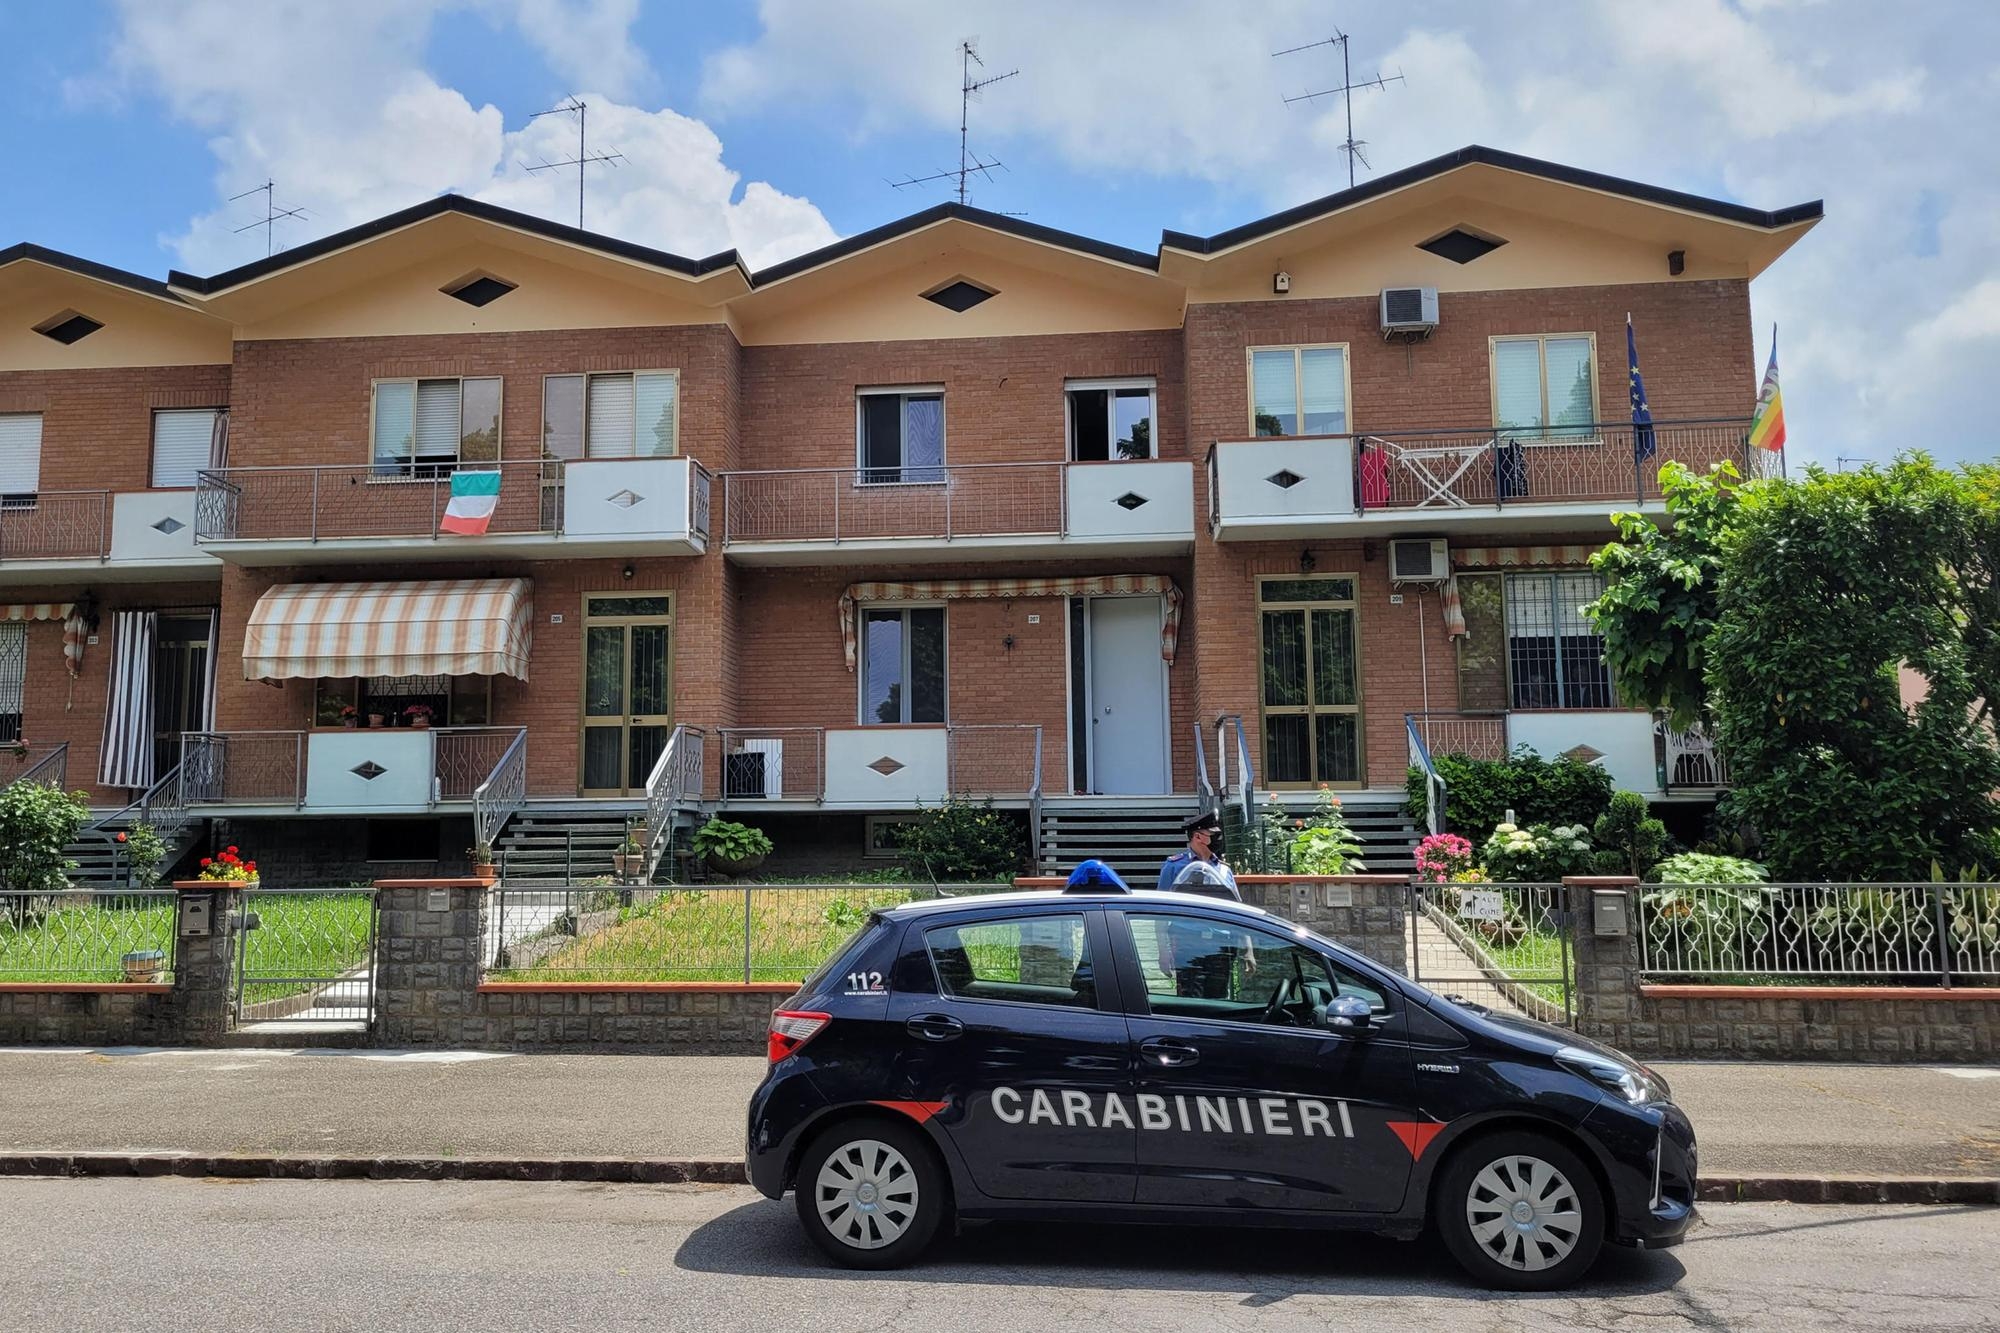 I carabinieri davanti alla villetta a schiera di Soliera in provincia di Modena dove un bambino di 13 mesi sarebbe caduto da un'altezza di tre metri mentre era in casa con la baby sitter, Soliera (Mo), 31 maggio 2022. ANSA /ELISABETTA BARACCHI